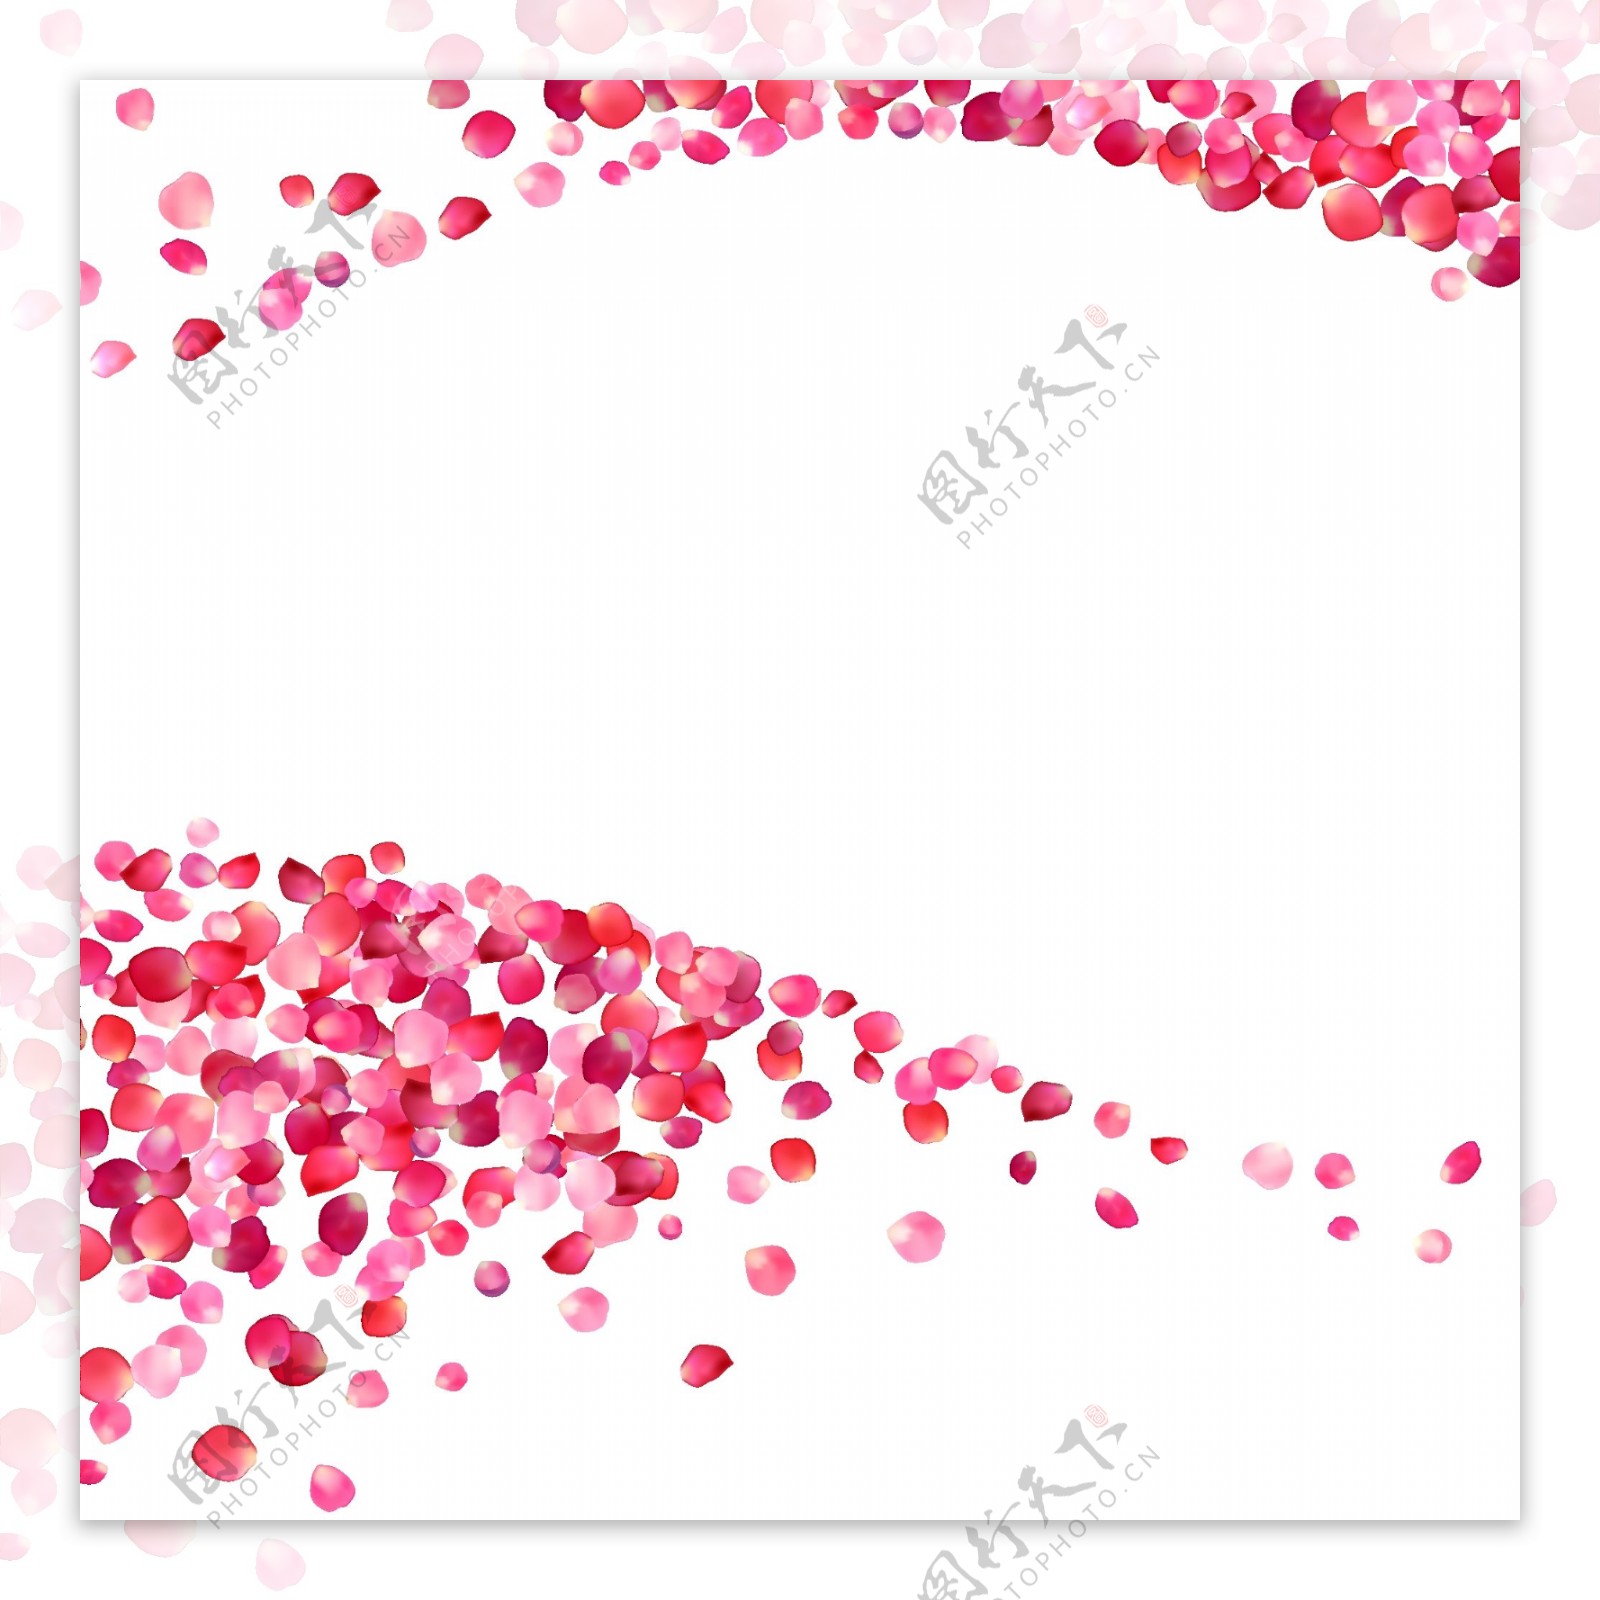 粉色波浪边框矢量海报设计素材